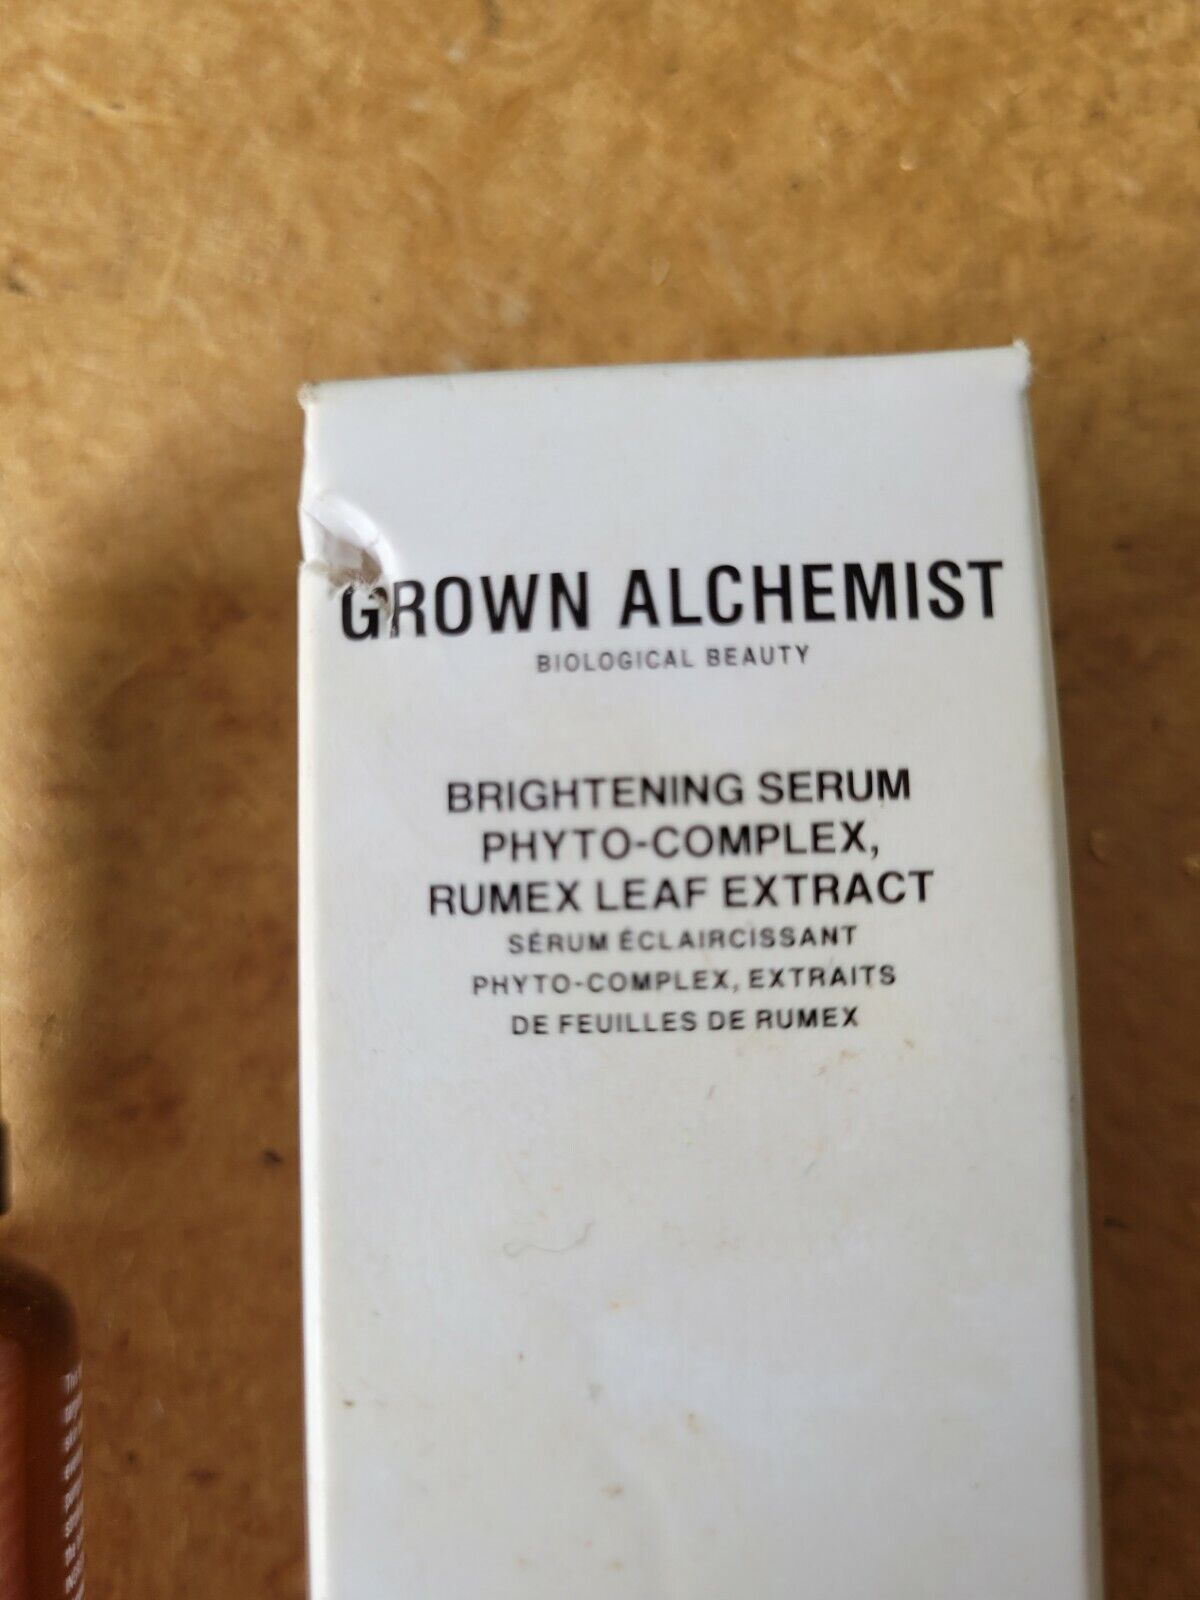 Grown Alchemist Brightening Serum Phyto-Complex Rumex Leaf Extract  0.84oz/25ml | eBay